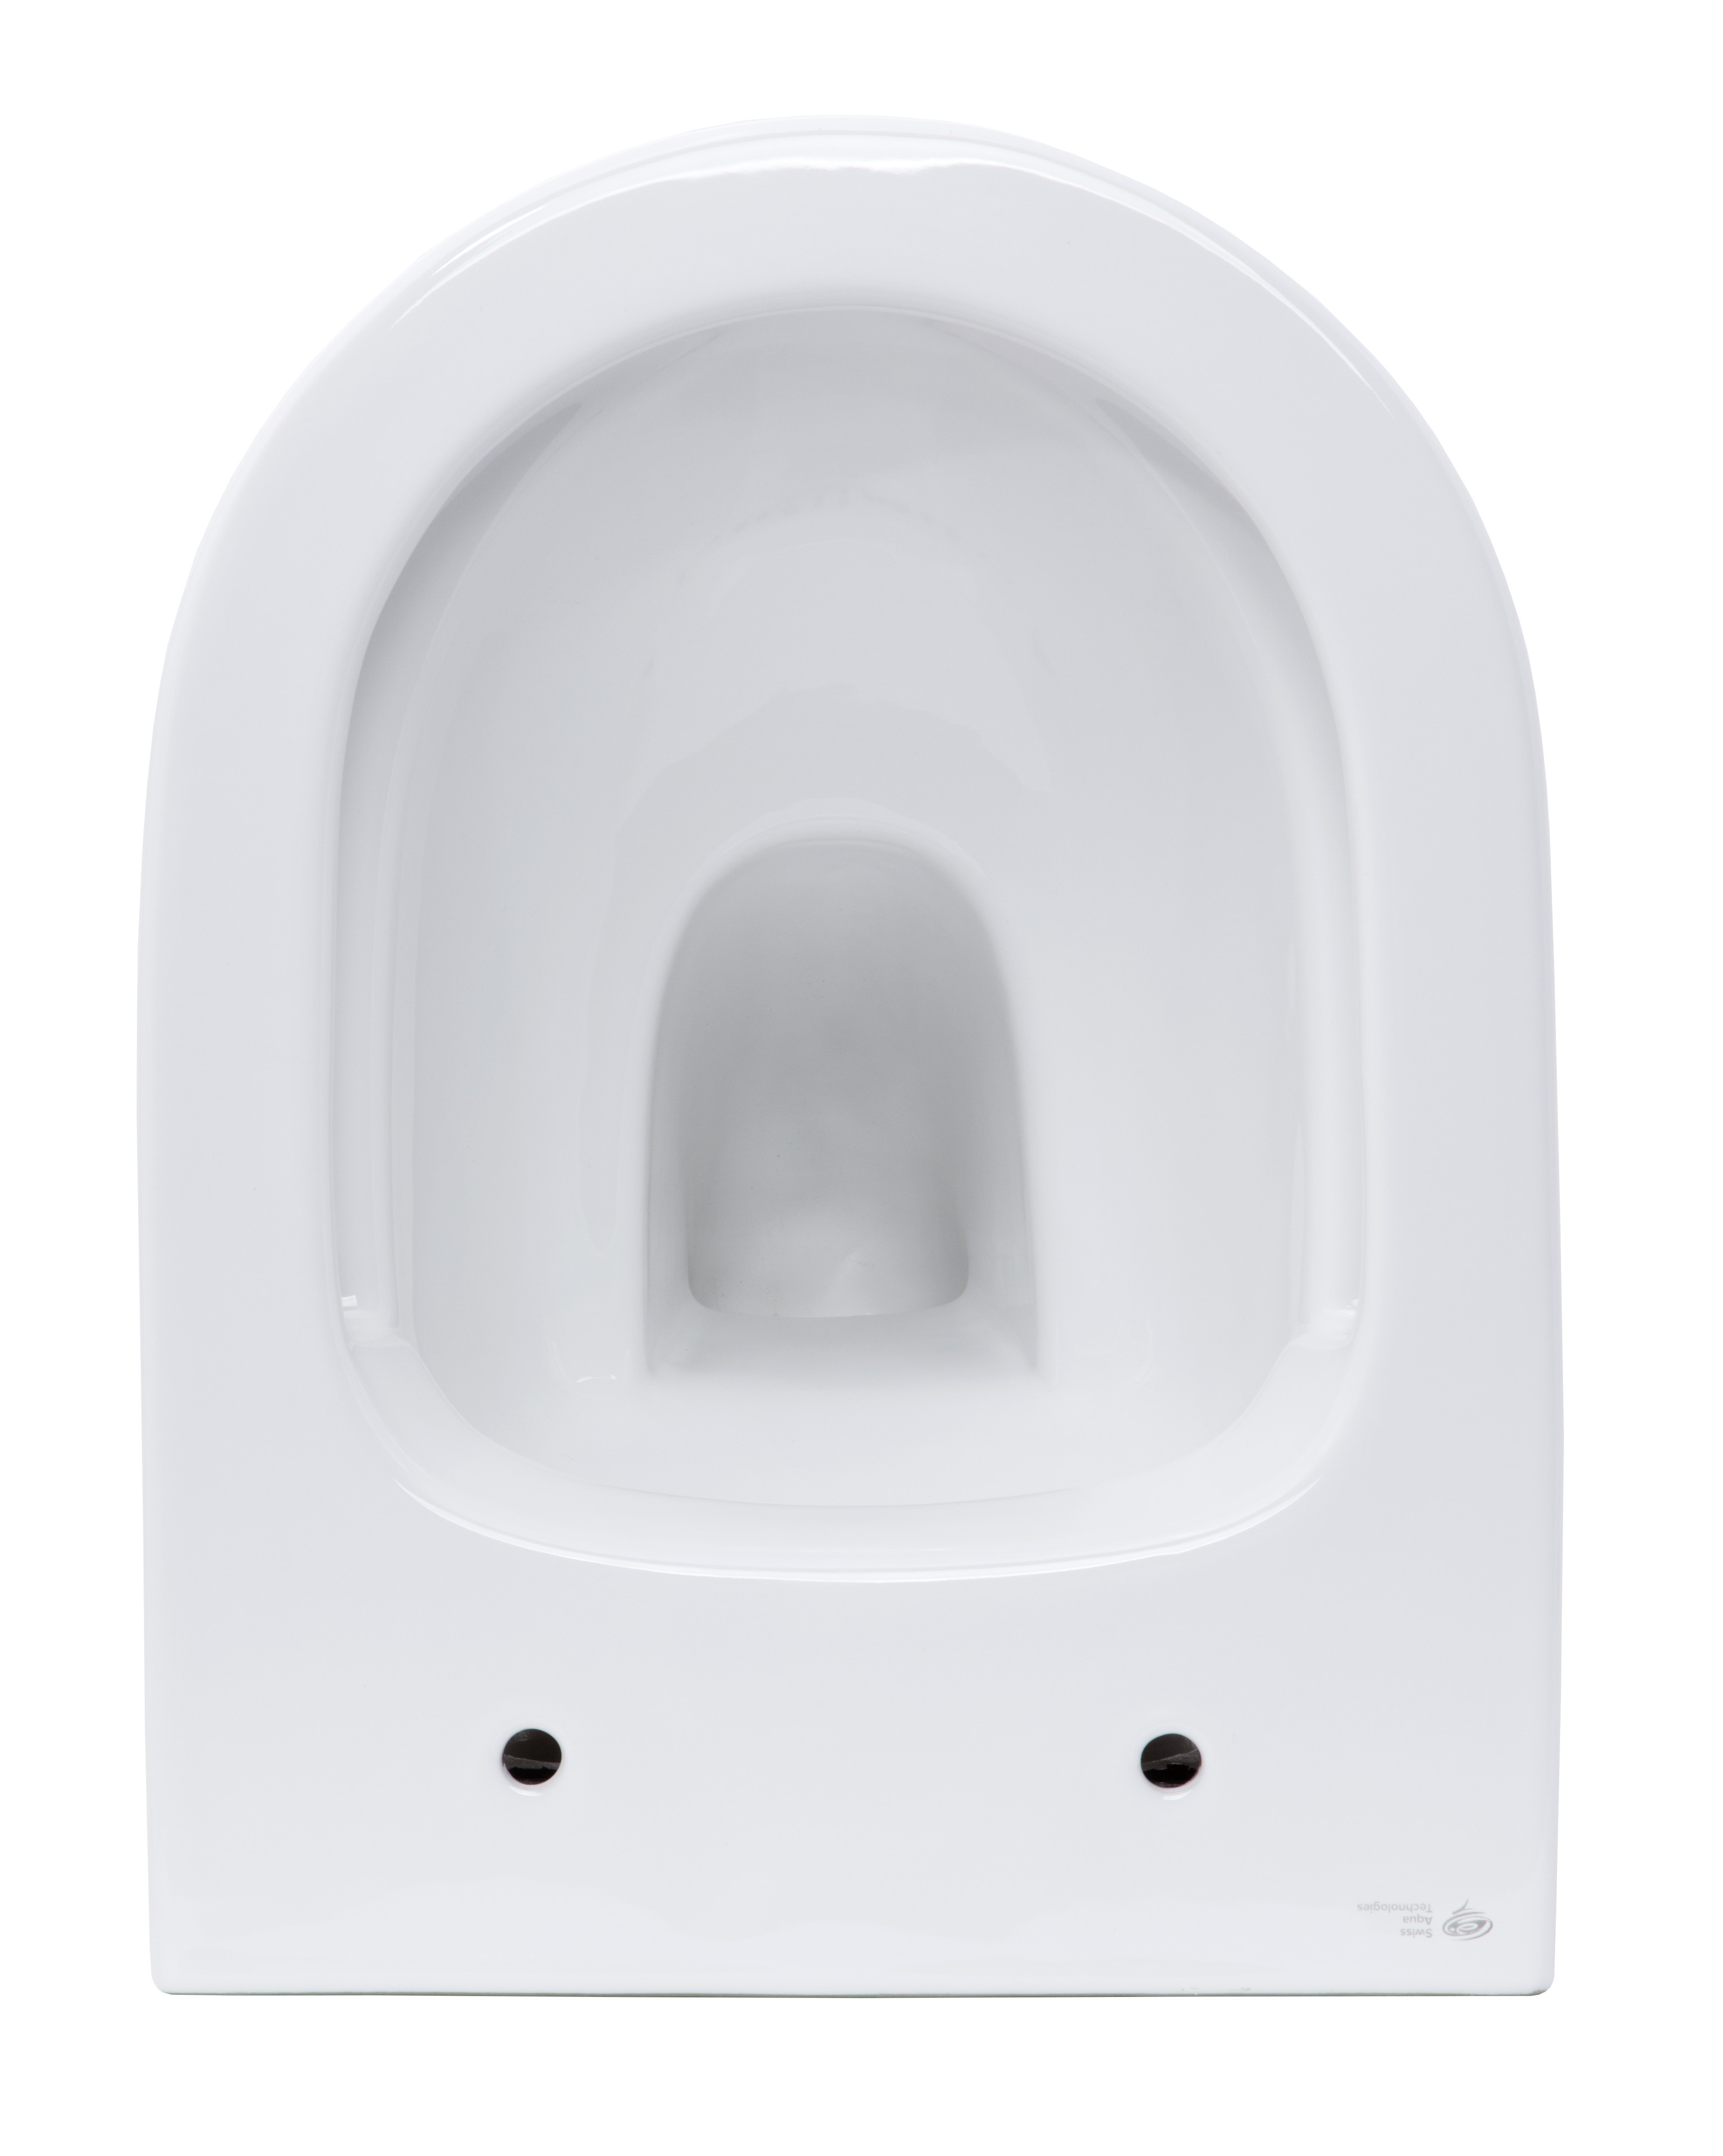 Swiss Aqua Technologies Infinitio WC sans bride avec fonction bidet  thermostatique + Abattant softclose (SATINF011RREXPBFCT) - Livea Sanitaire